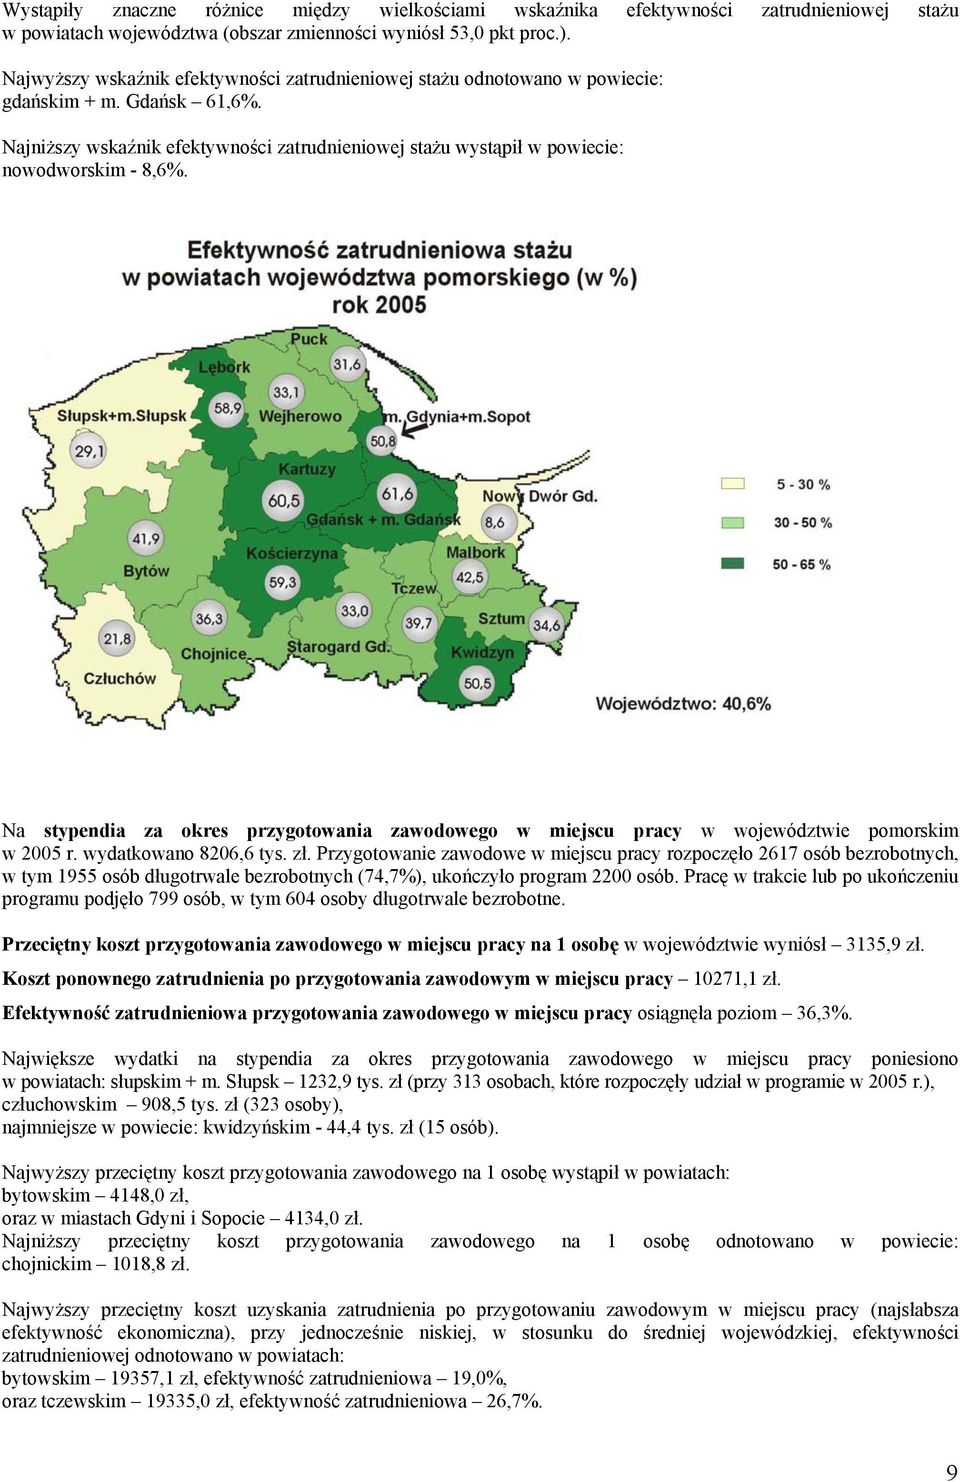 Na stypendia za okres przygotowania zawodowego w miejscu pracy w województwie pomorskim w 2005 r. wydatkowano 8206,6 tys. zł.